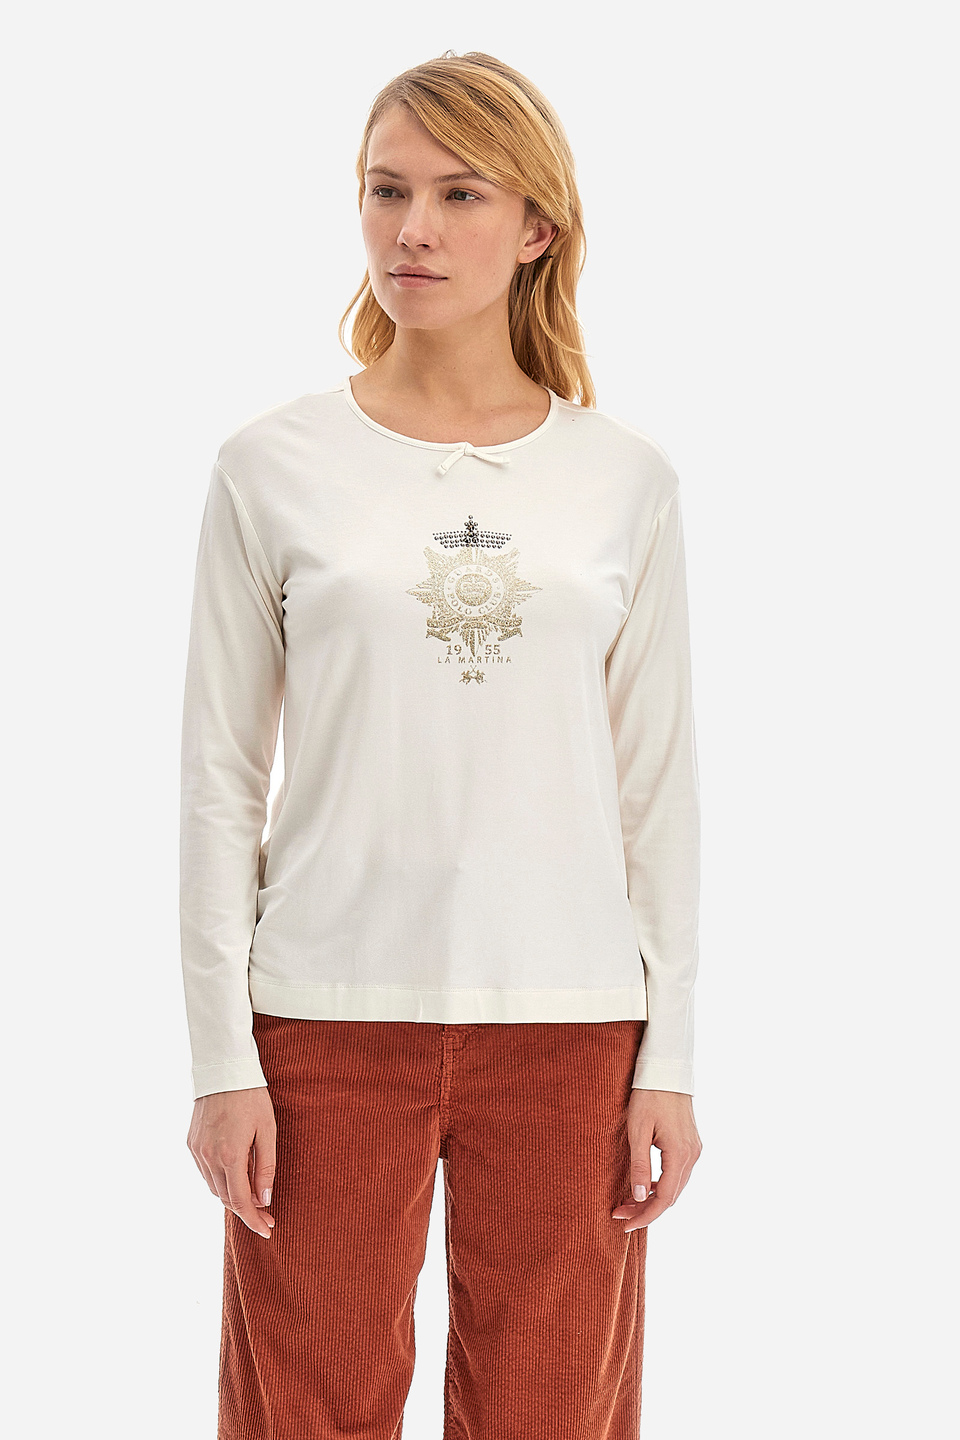 Tee-shirt femme coupe classique - Wyetta | La Martina - Official Online Shop